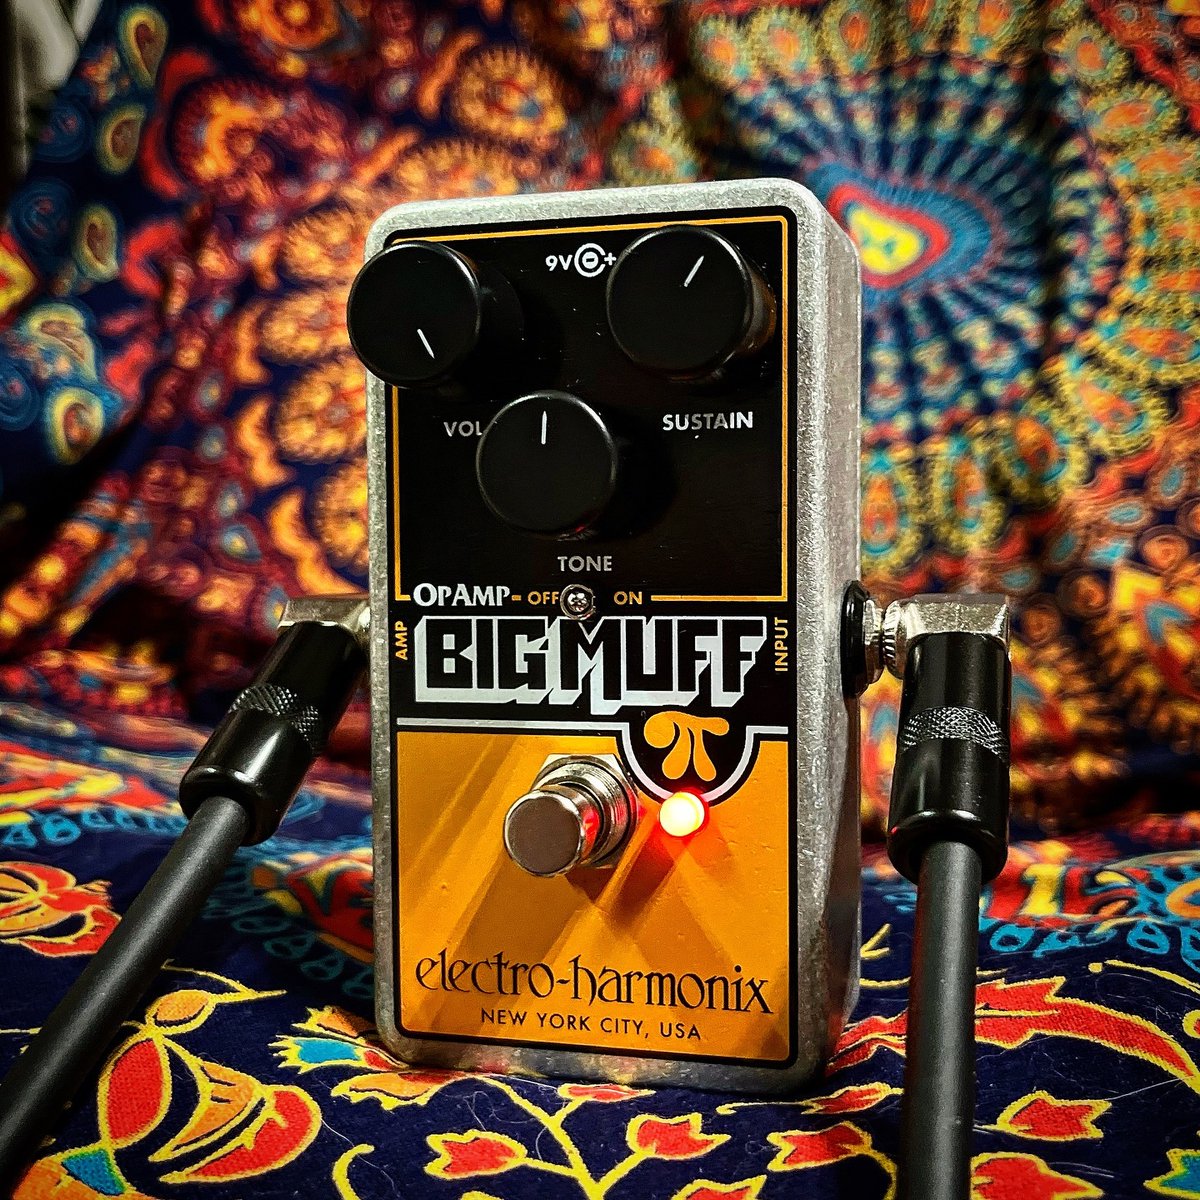 Let the EHX Op-Amp Big Muff Pi take you on a trip of fuzz love and overwhelming tones! ehx.com/opampbigmuffpi #ehx #guitarpedals #guitargear #guitareffects #electroharmonix #bigmuff